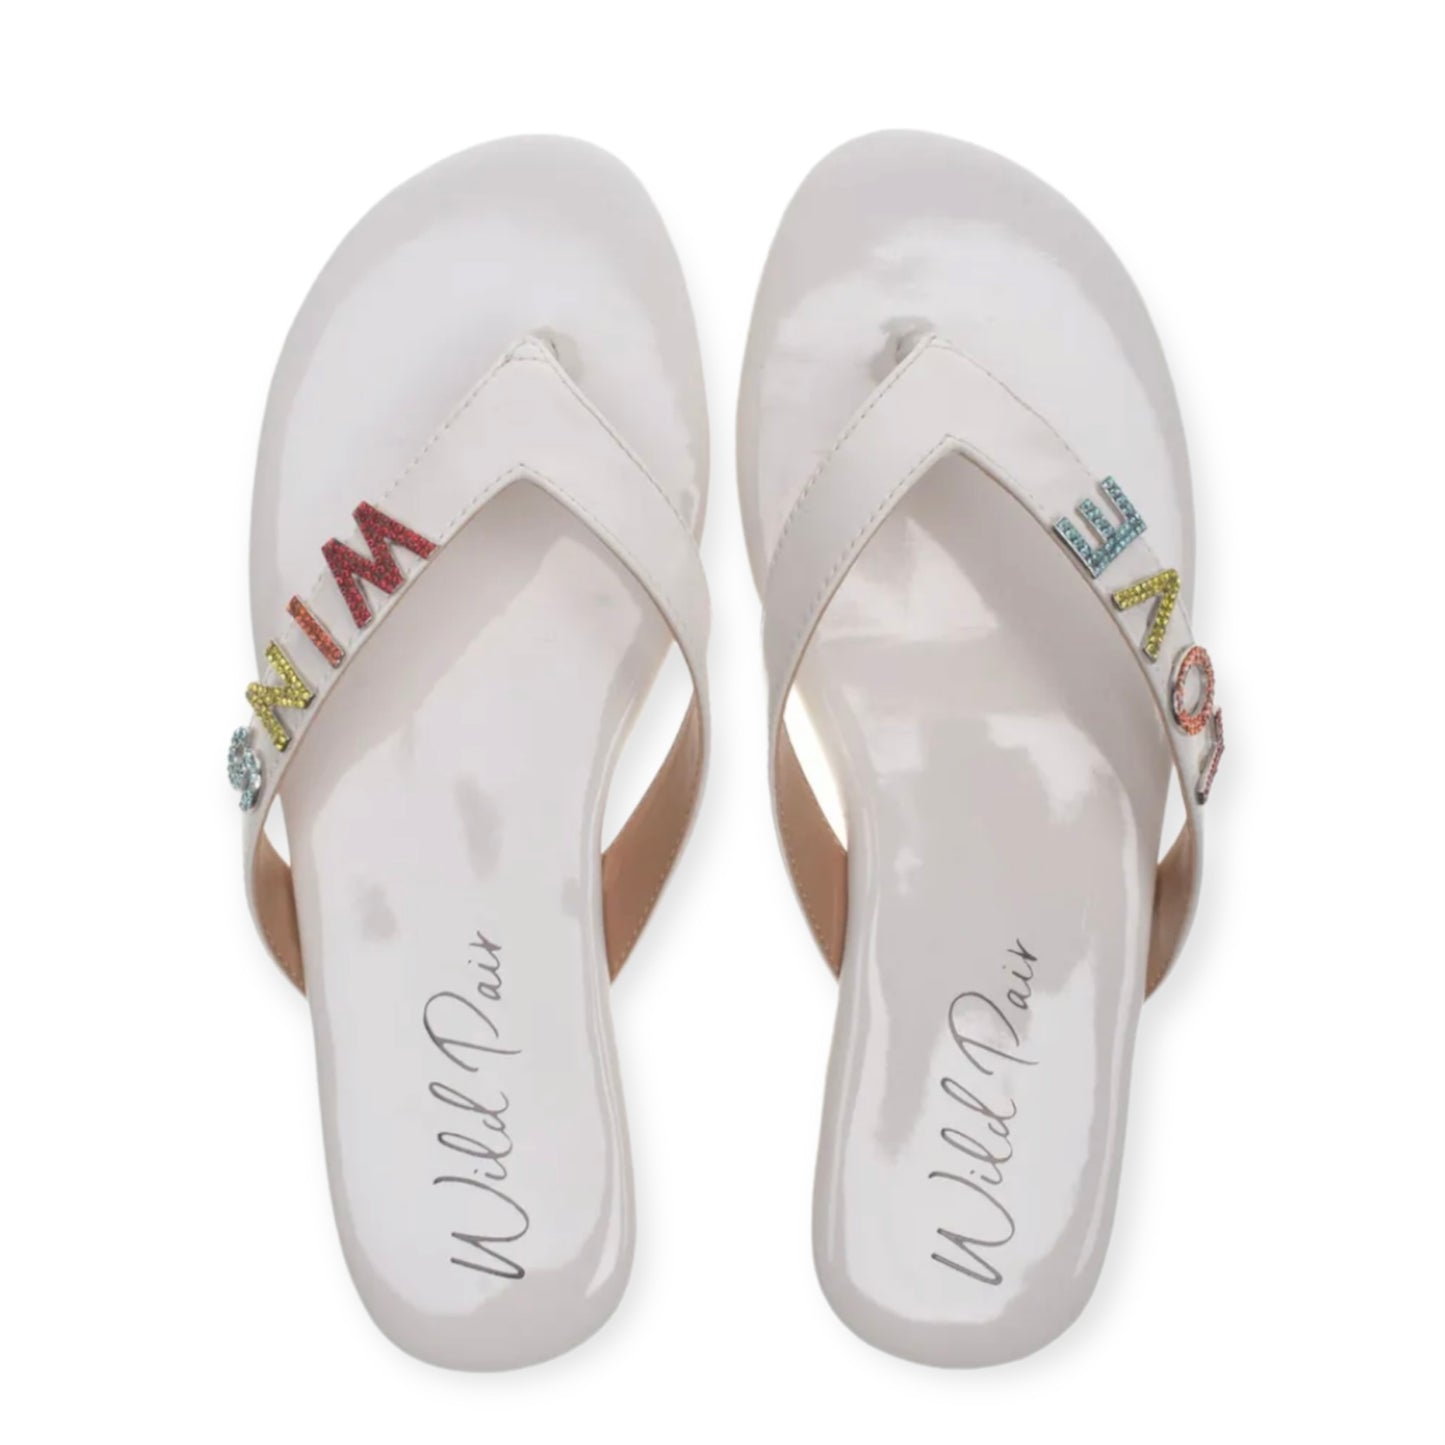 FANTASIA Embellished Flats Slide Women's Sandals